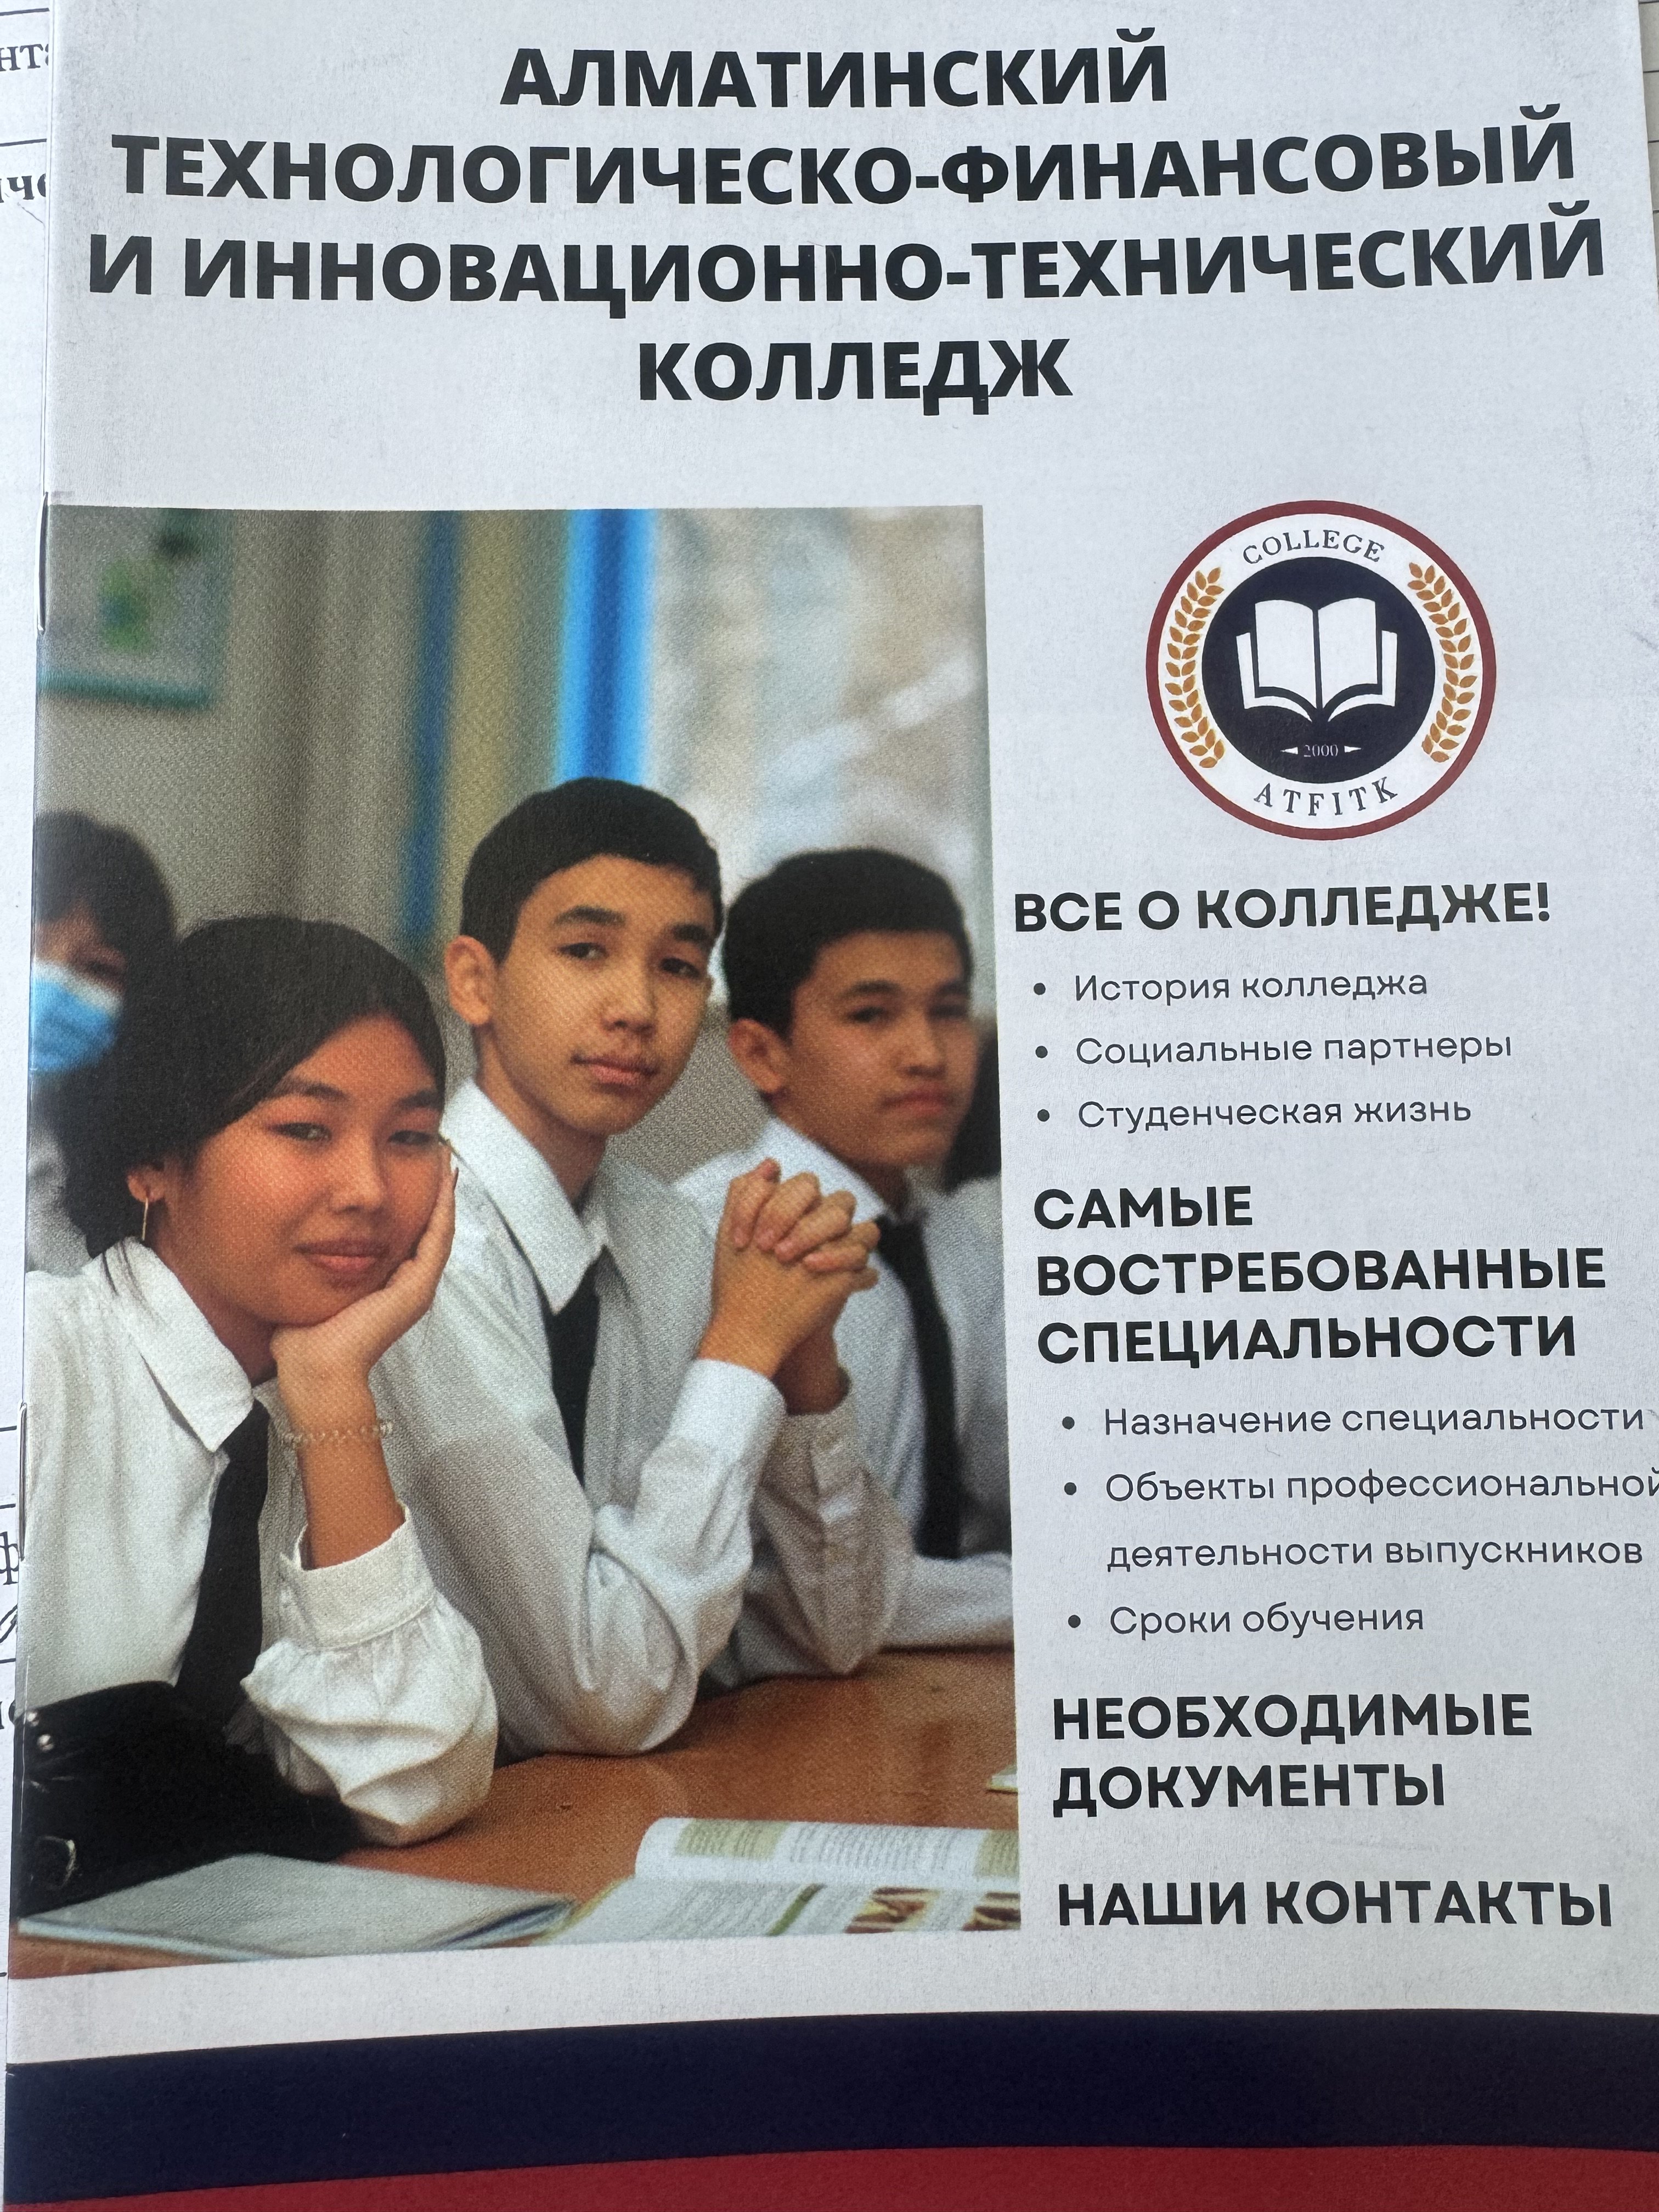 Алматинский технологическо-финансовый и инновационно-технический колледж